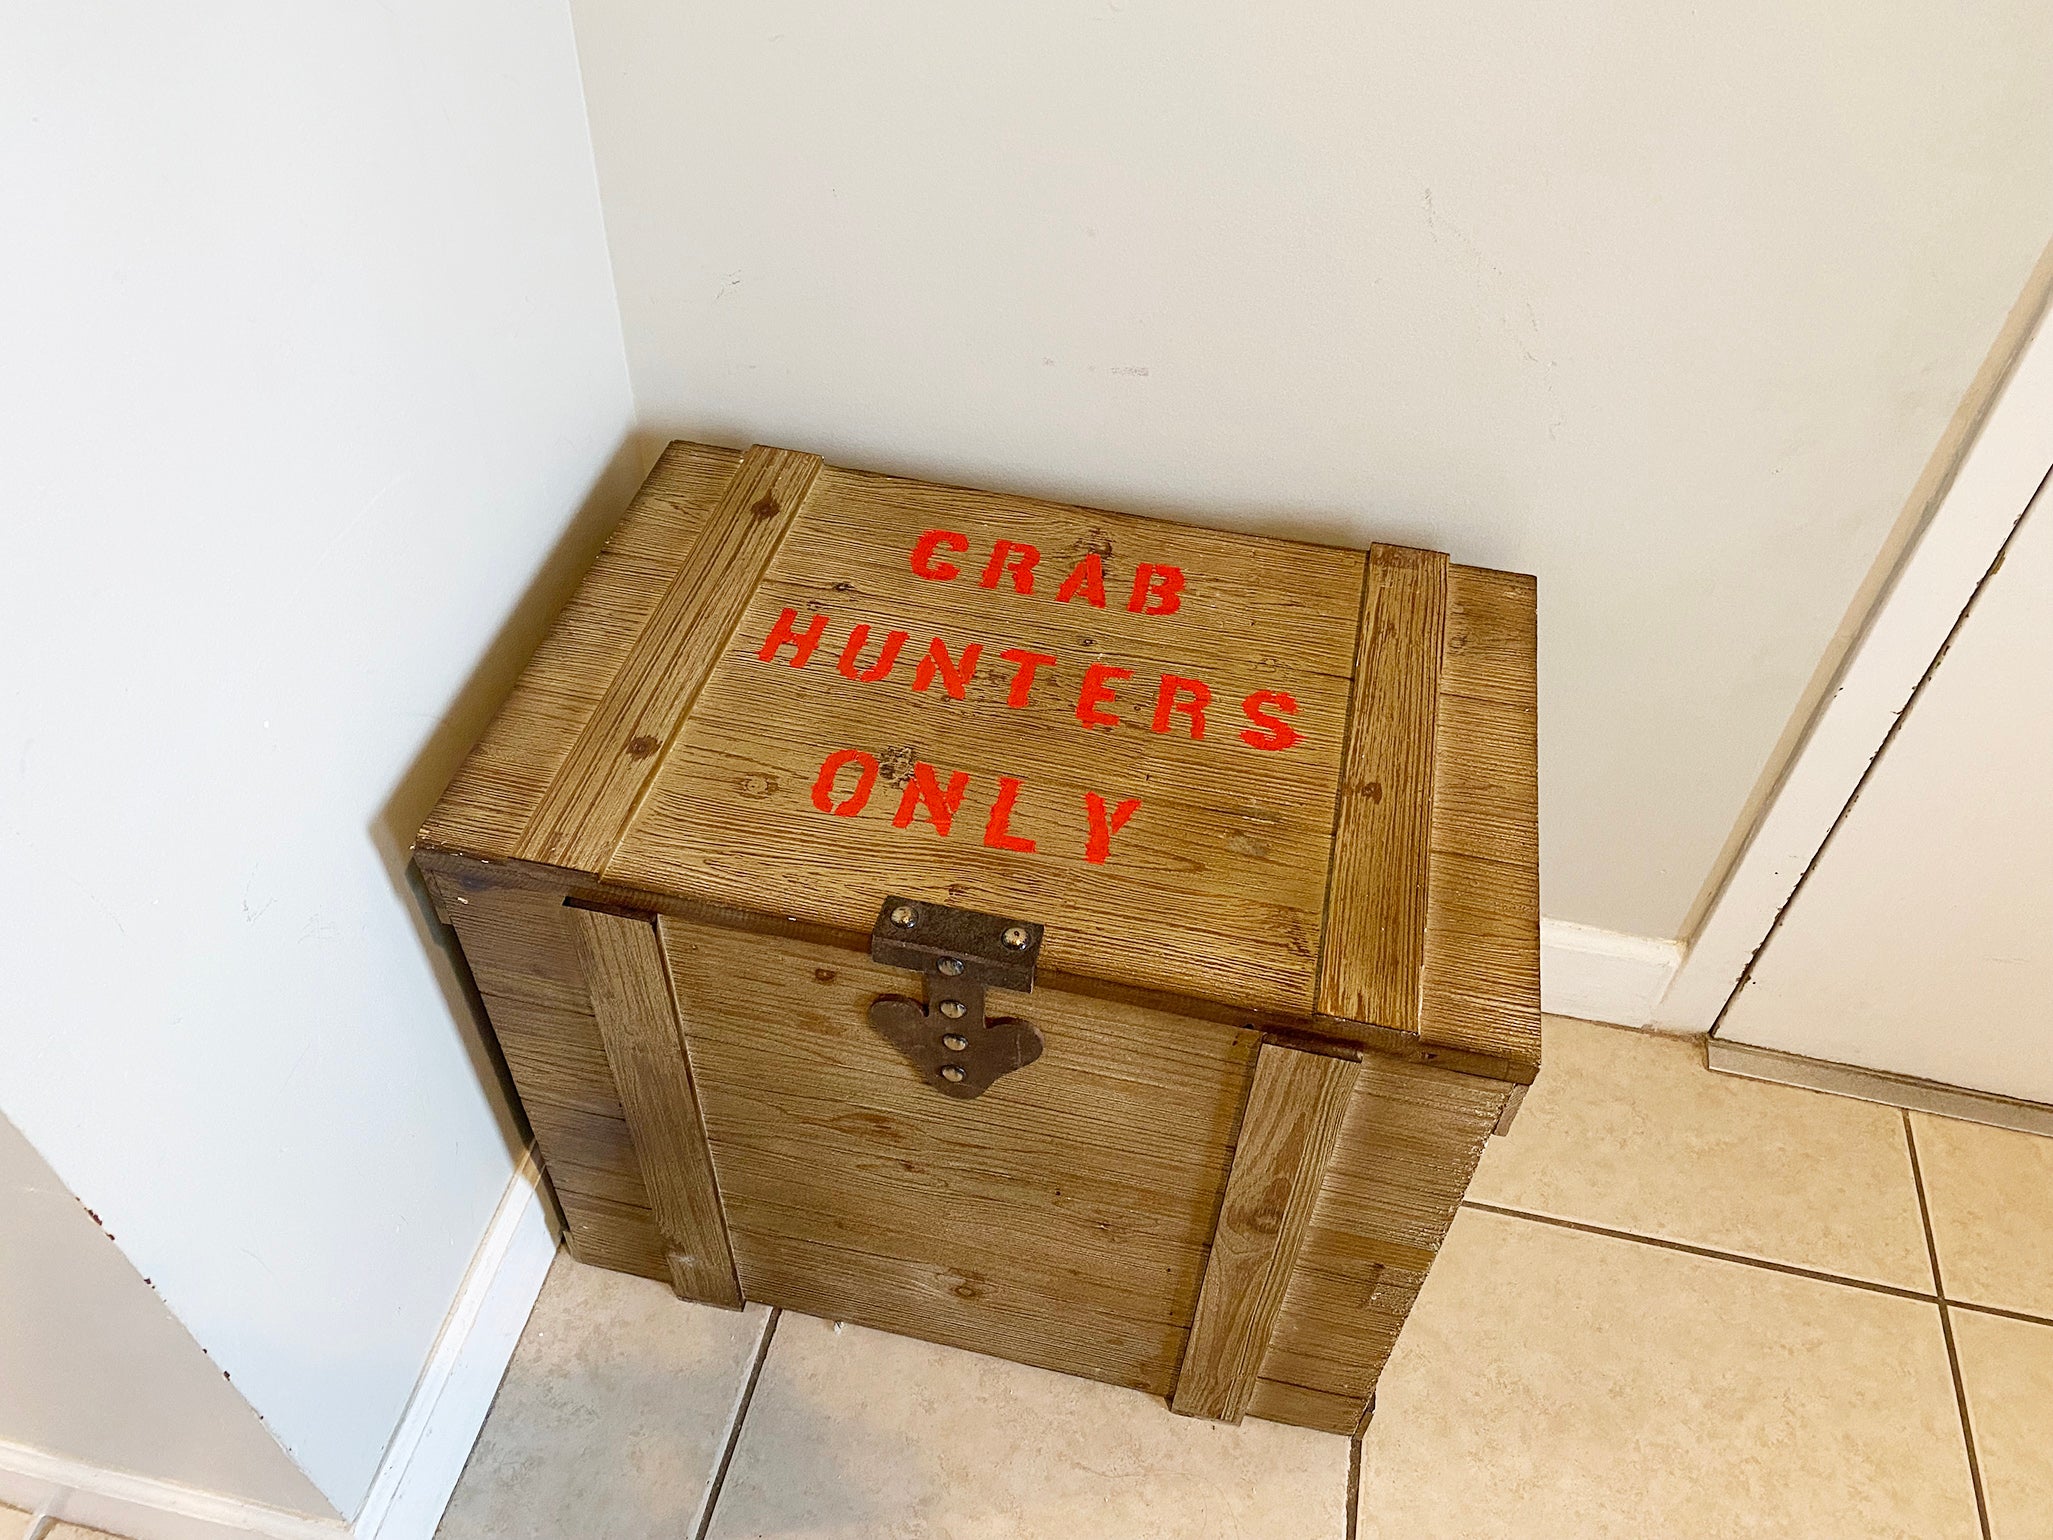 Crab hunting box!